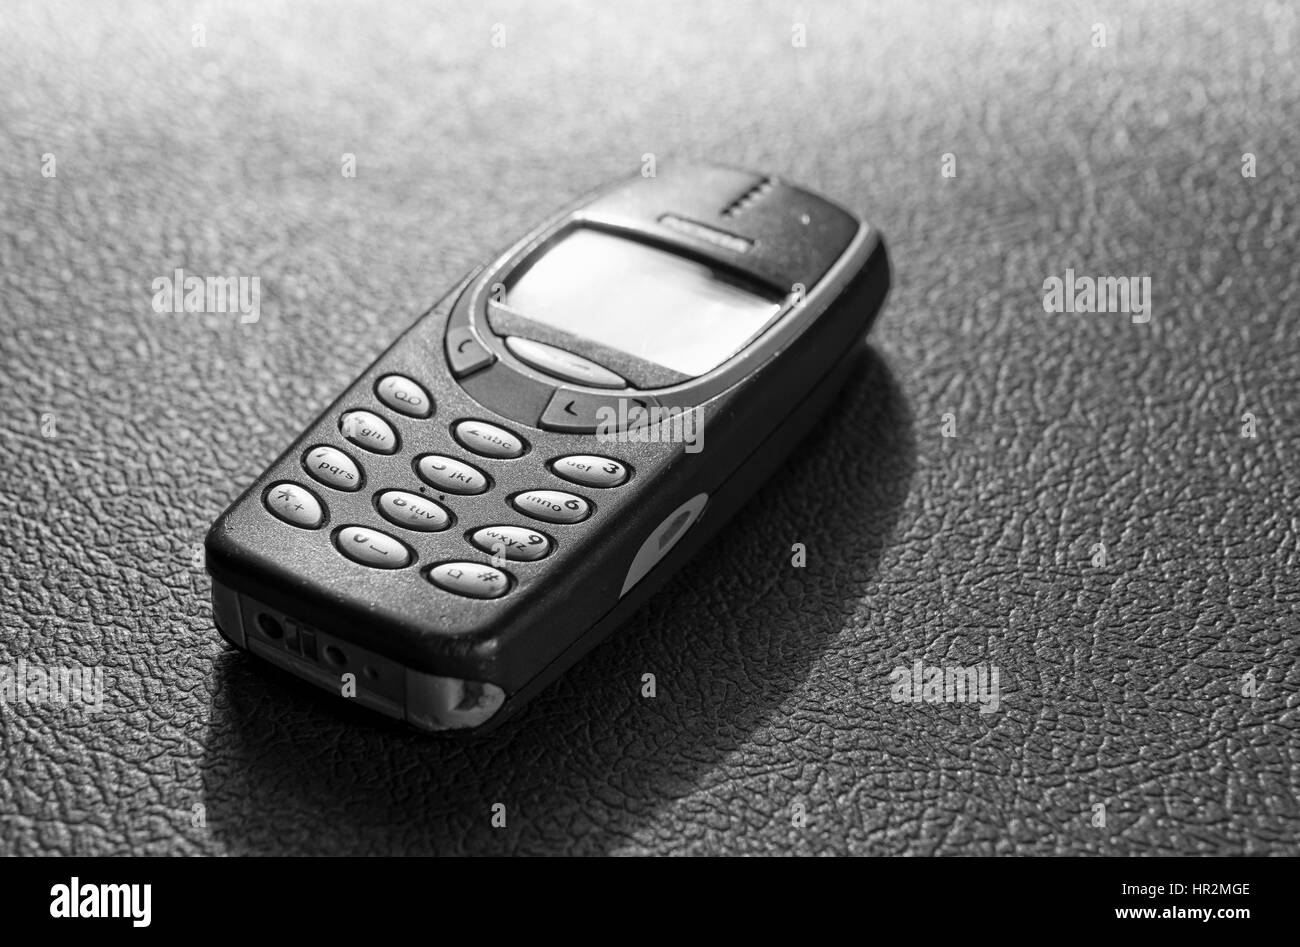 Nokia 3310 telefono cellulare, uno di Nokia per i telefoni cellulari più popolare Foto Stock